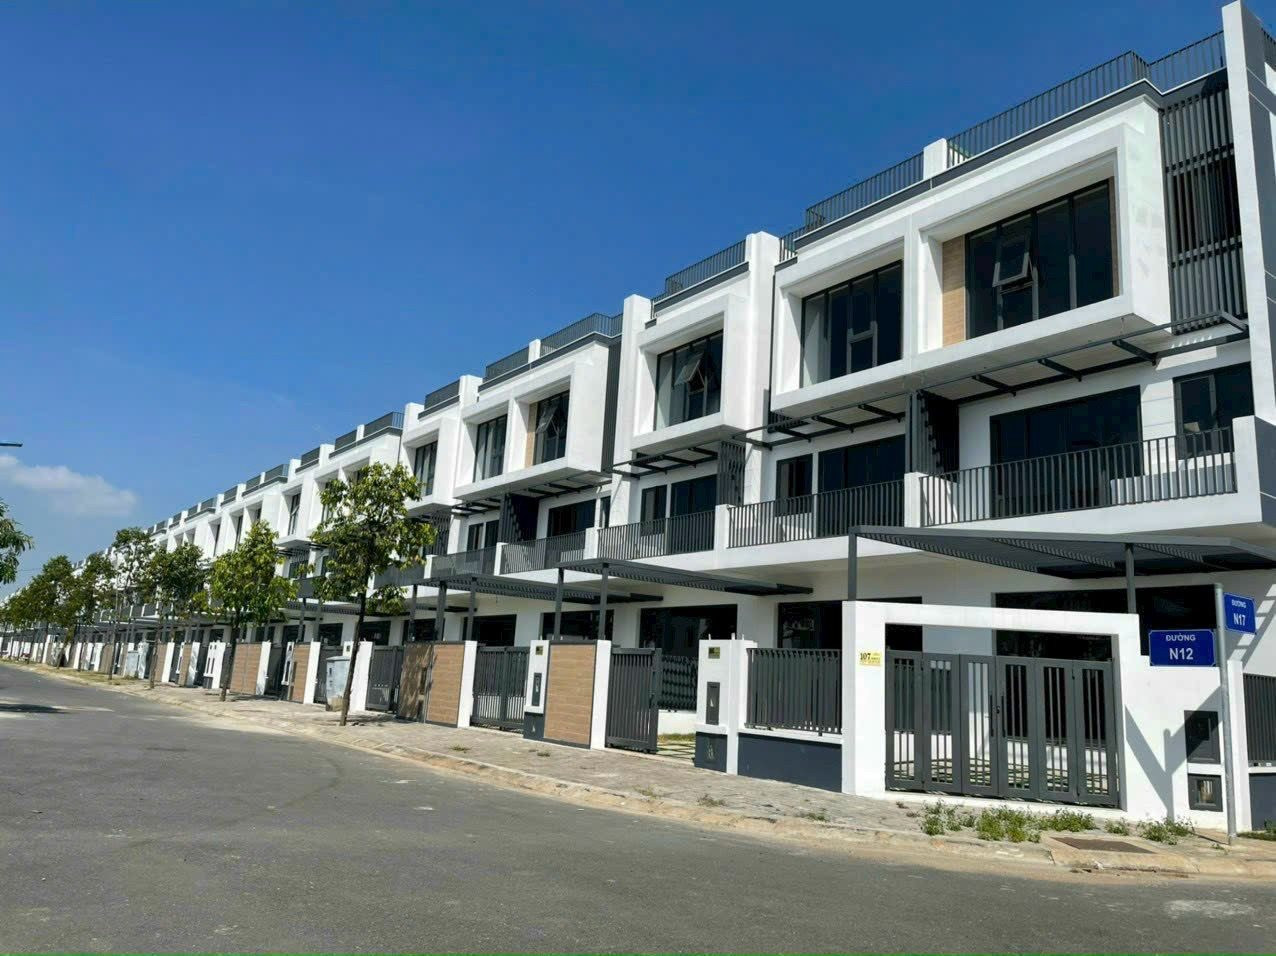 Phát hiện một khu ven của Tp.HCM có giá sơ cấp nhà phố biệt thự bán ra chạm mốc hơn 62 tỉ đồng/căn - Ảnh 2.